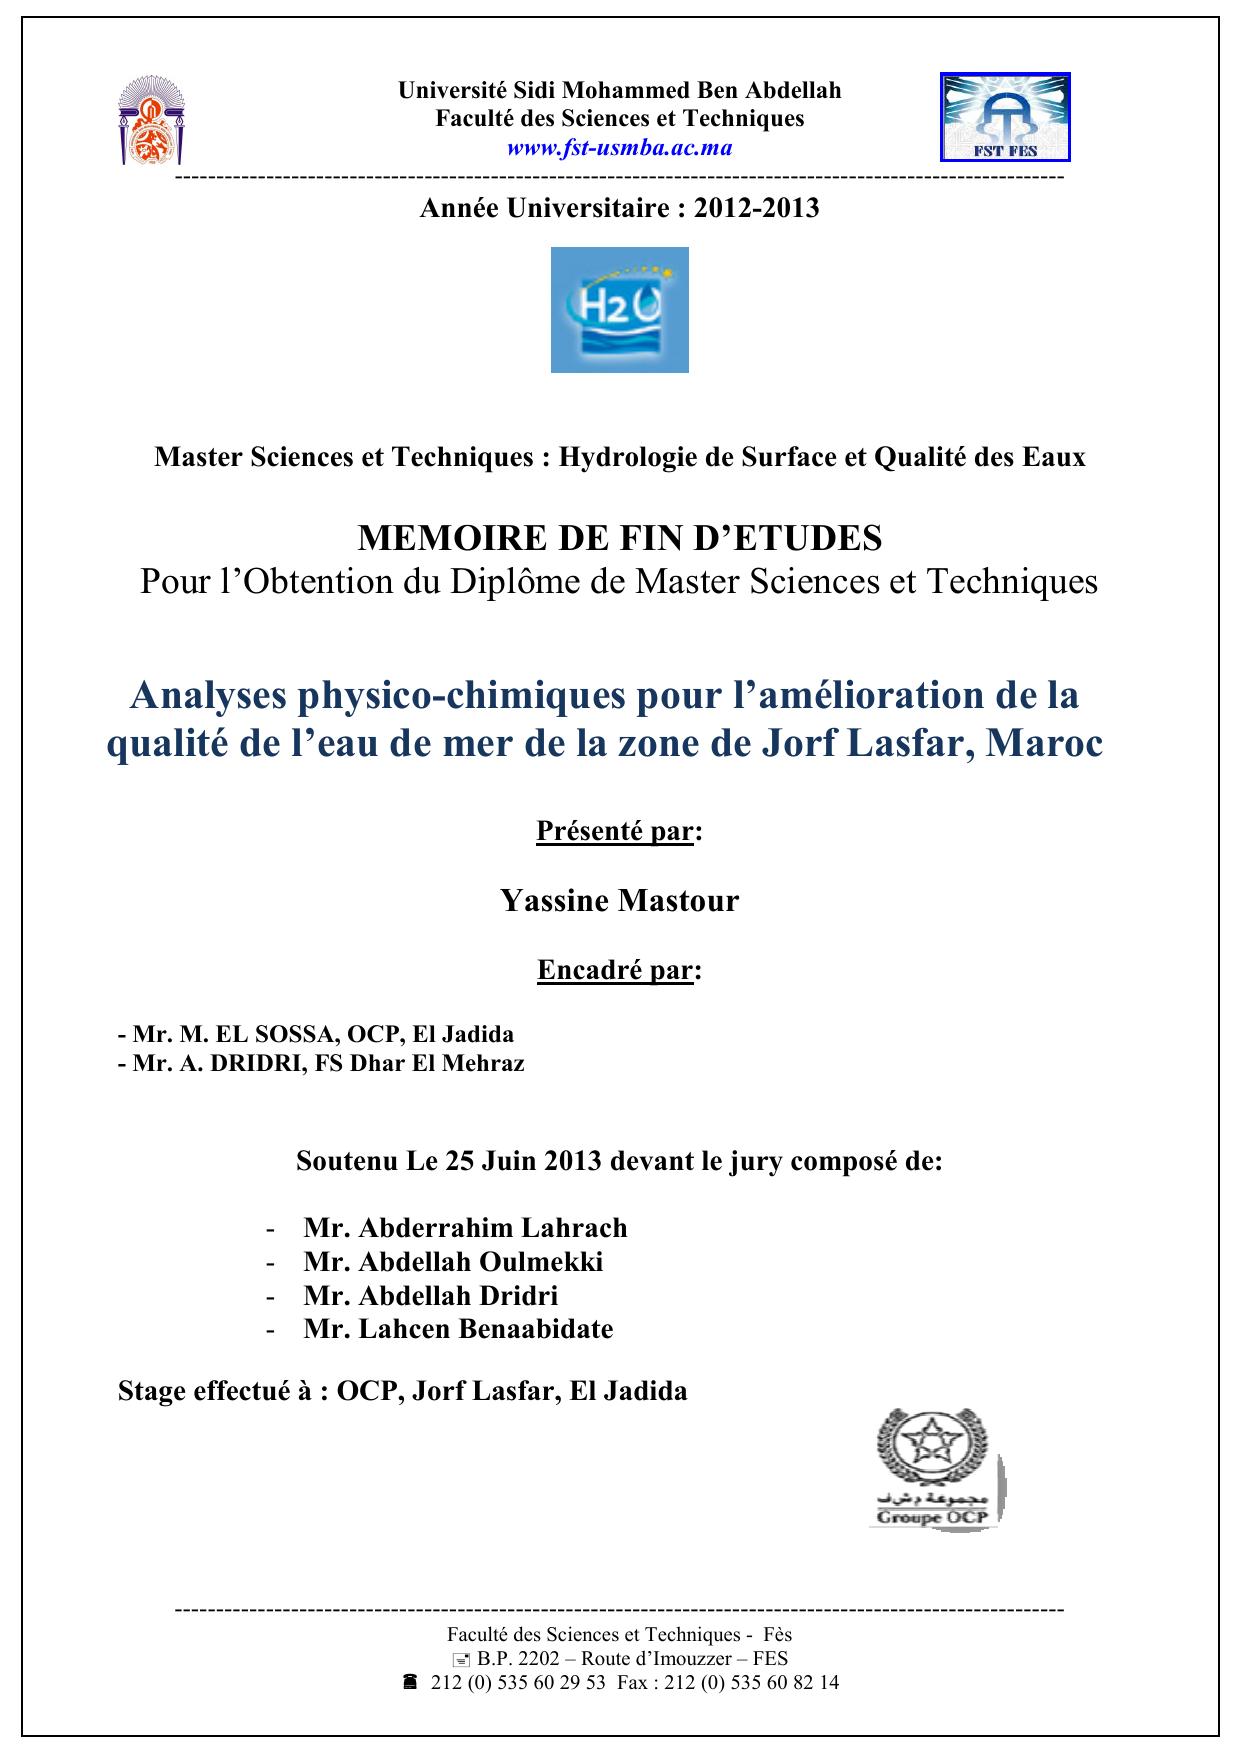 Analyses physico-chimiques pour l’amélioration de la qualité de l’eau de mer de la zone de Jorf Lasfar, Maroc